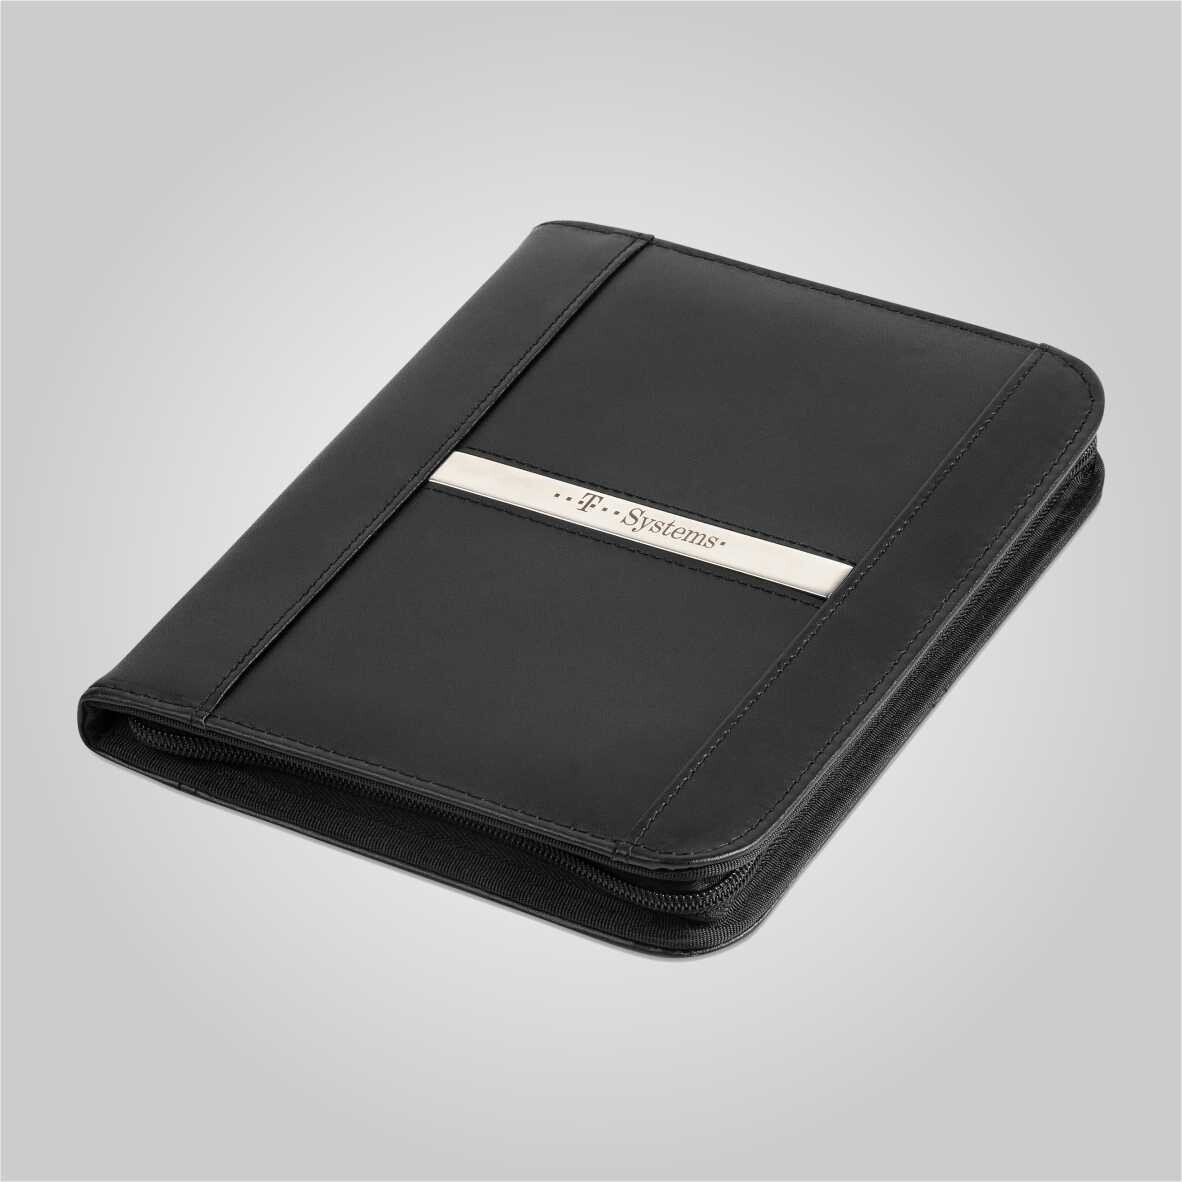 Benchmark A5 Zip-Around Folder